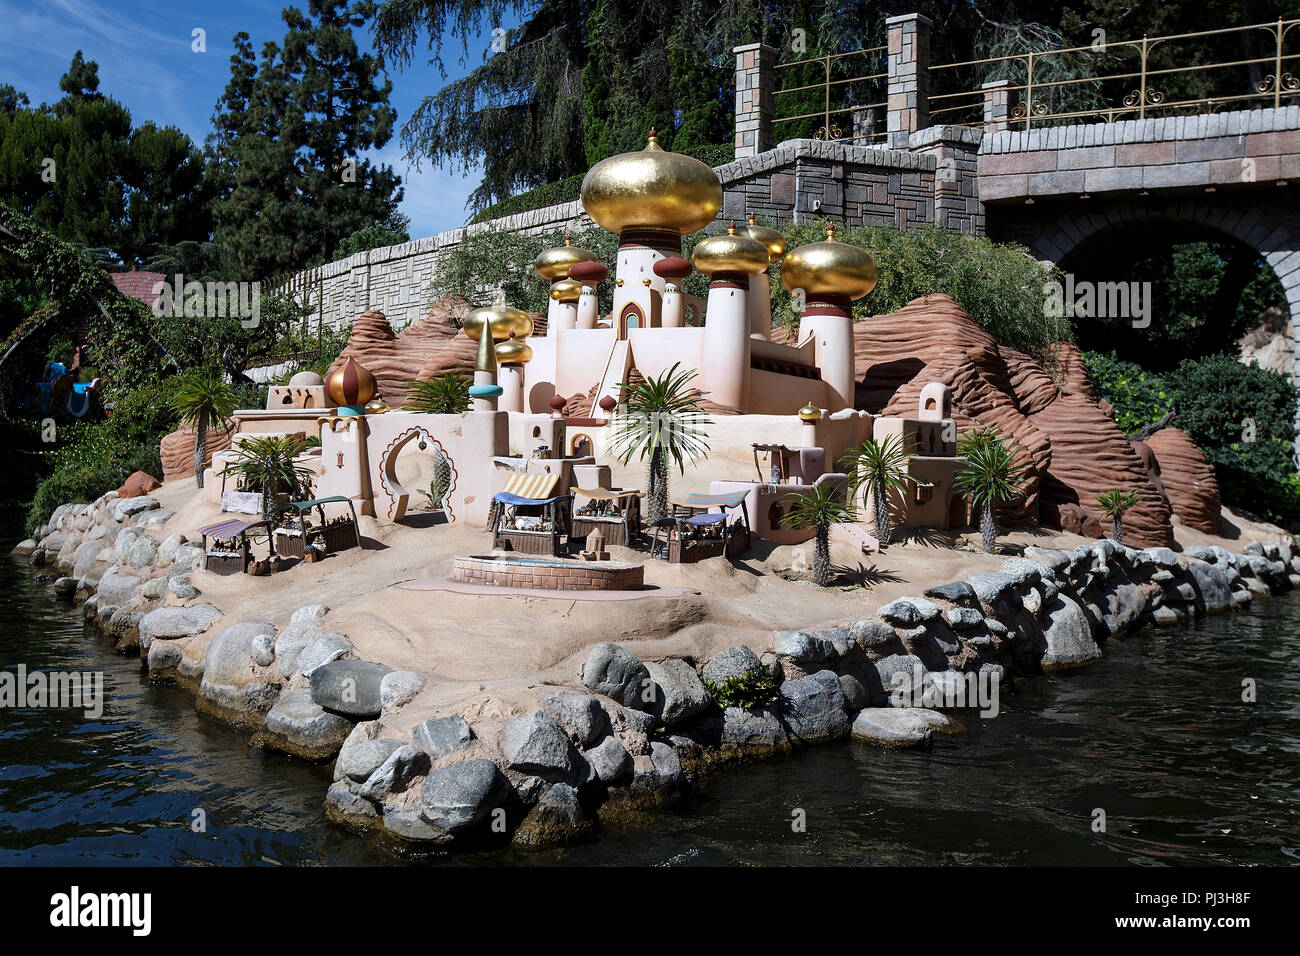 Sultan's Palace von Aladdin Anzeige auf dem Storybook Land Kanal Boote fahren, Disneyland Park, Anaheim, Kalifornien, Vereinigte Staaten von Amerika Stockfoto